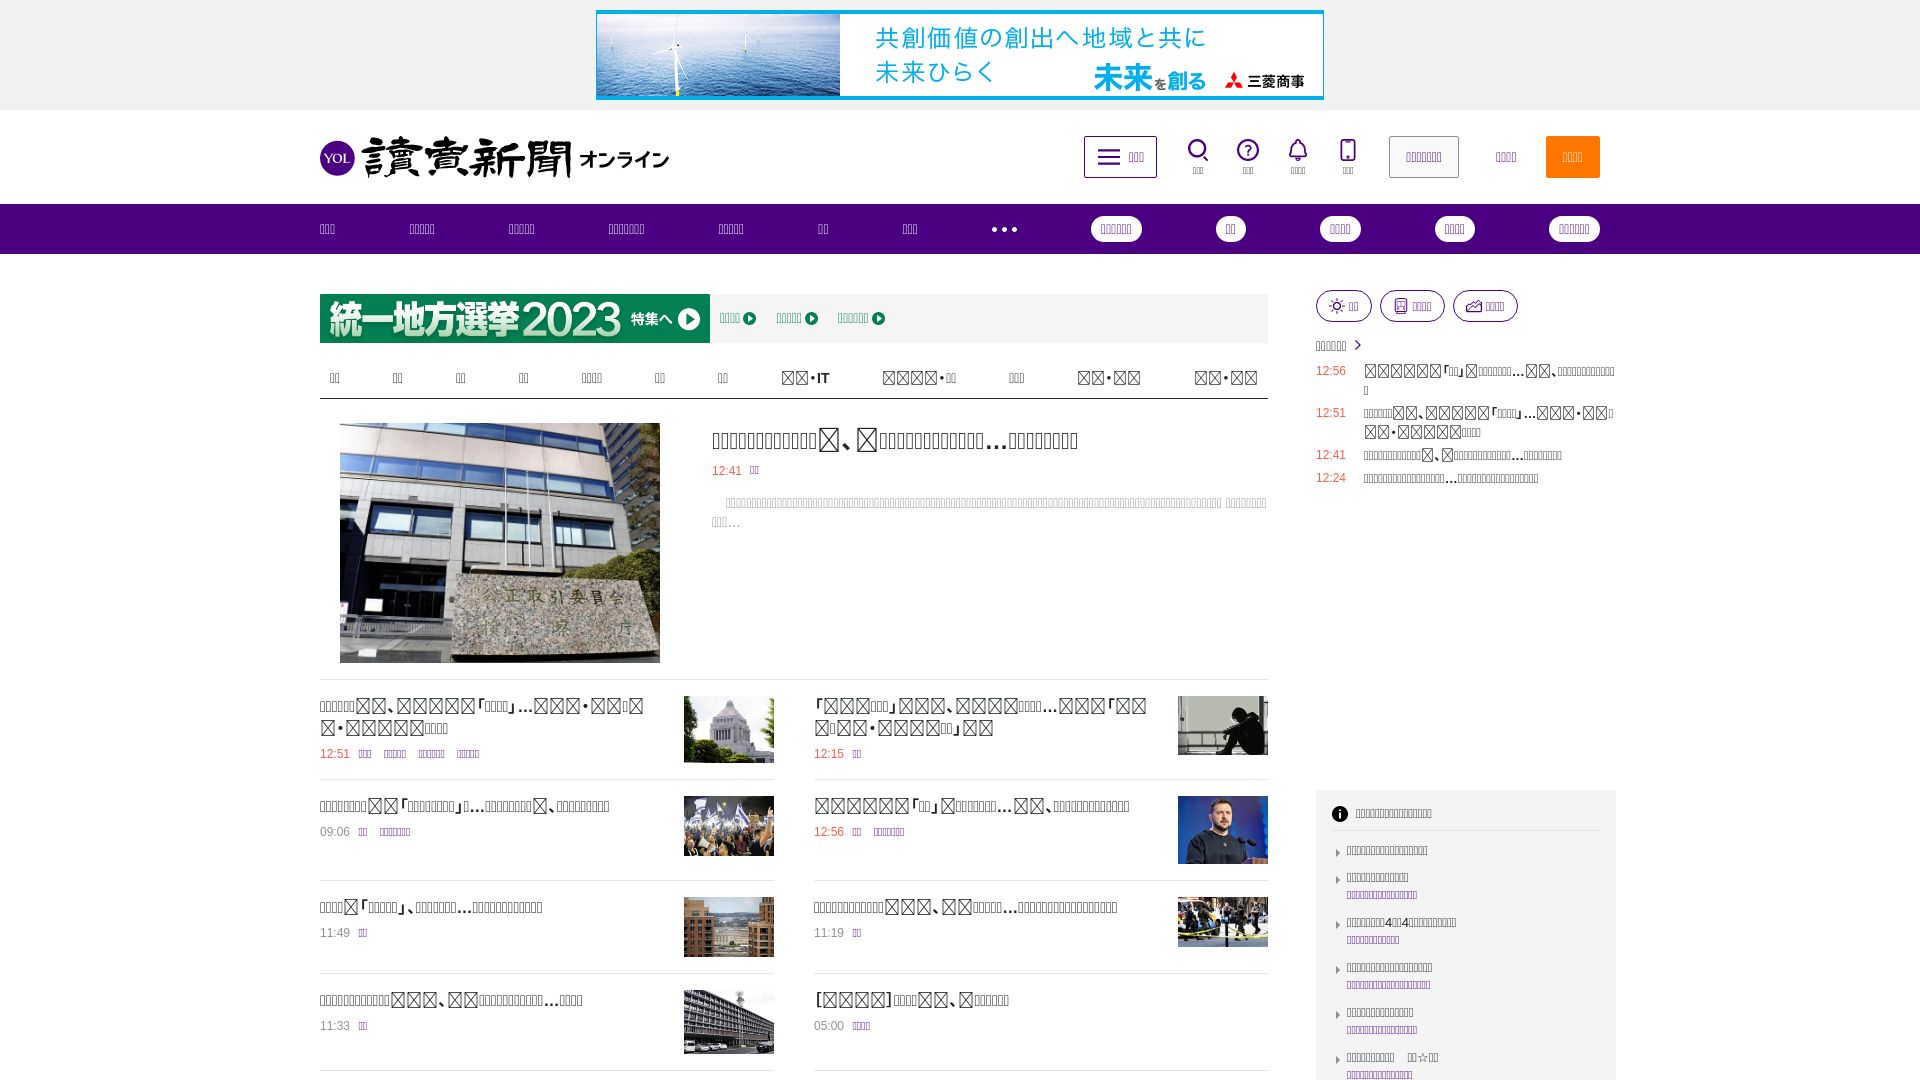 Website status yomiuri.co.jp is   ONLINE